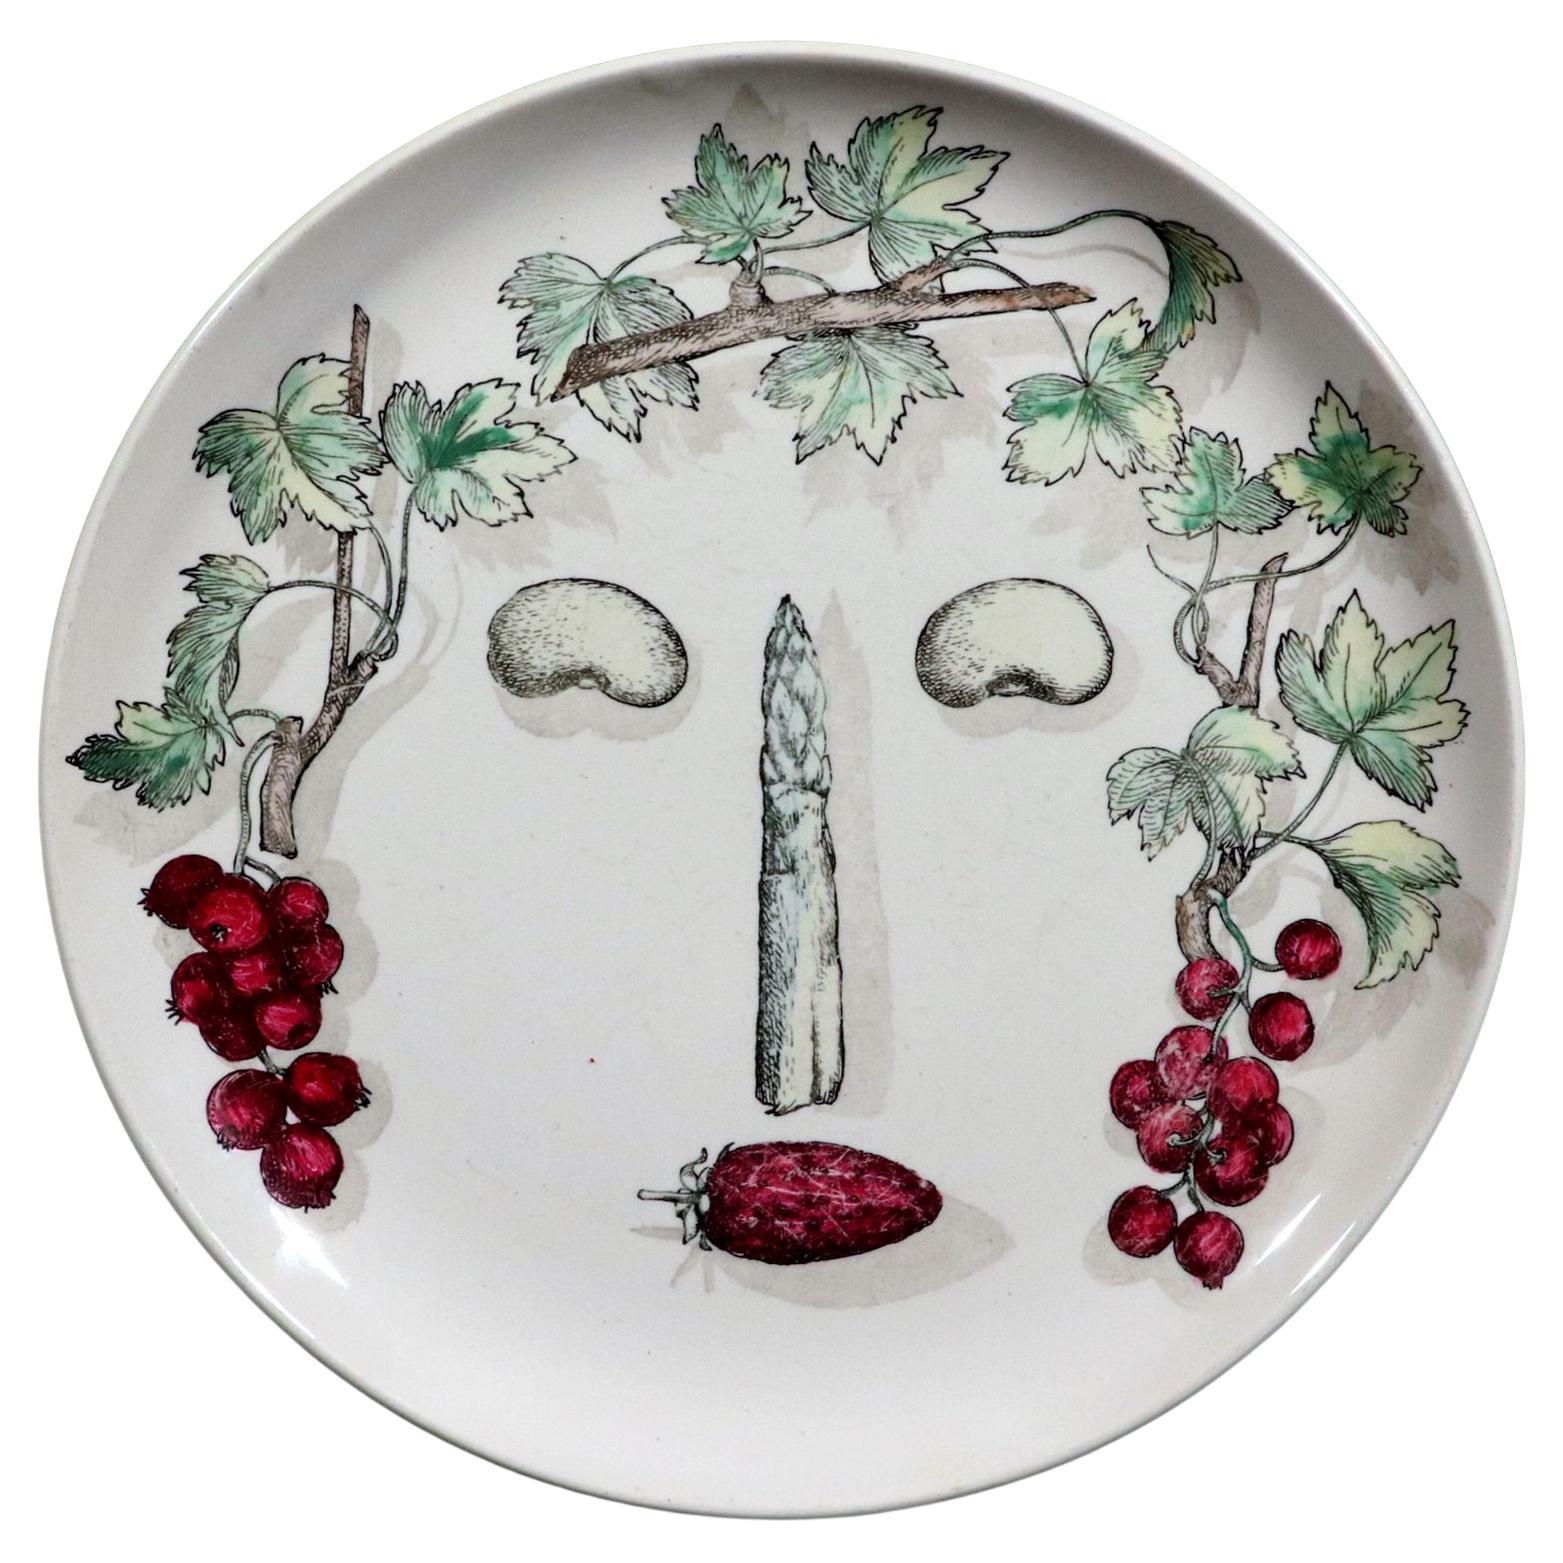 Piero Fornasetti Keramik Arcimboldesca Gemüseteller mit Gesichtsausschnitt